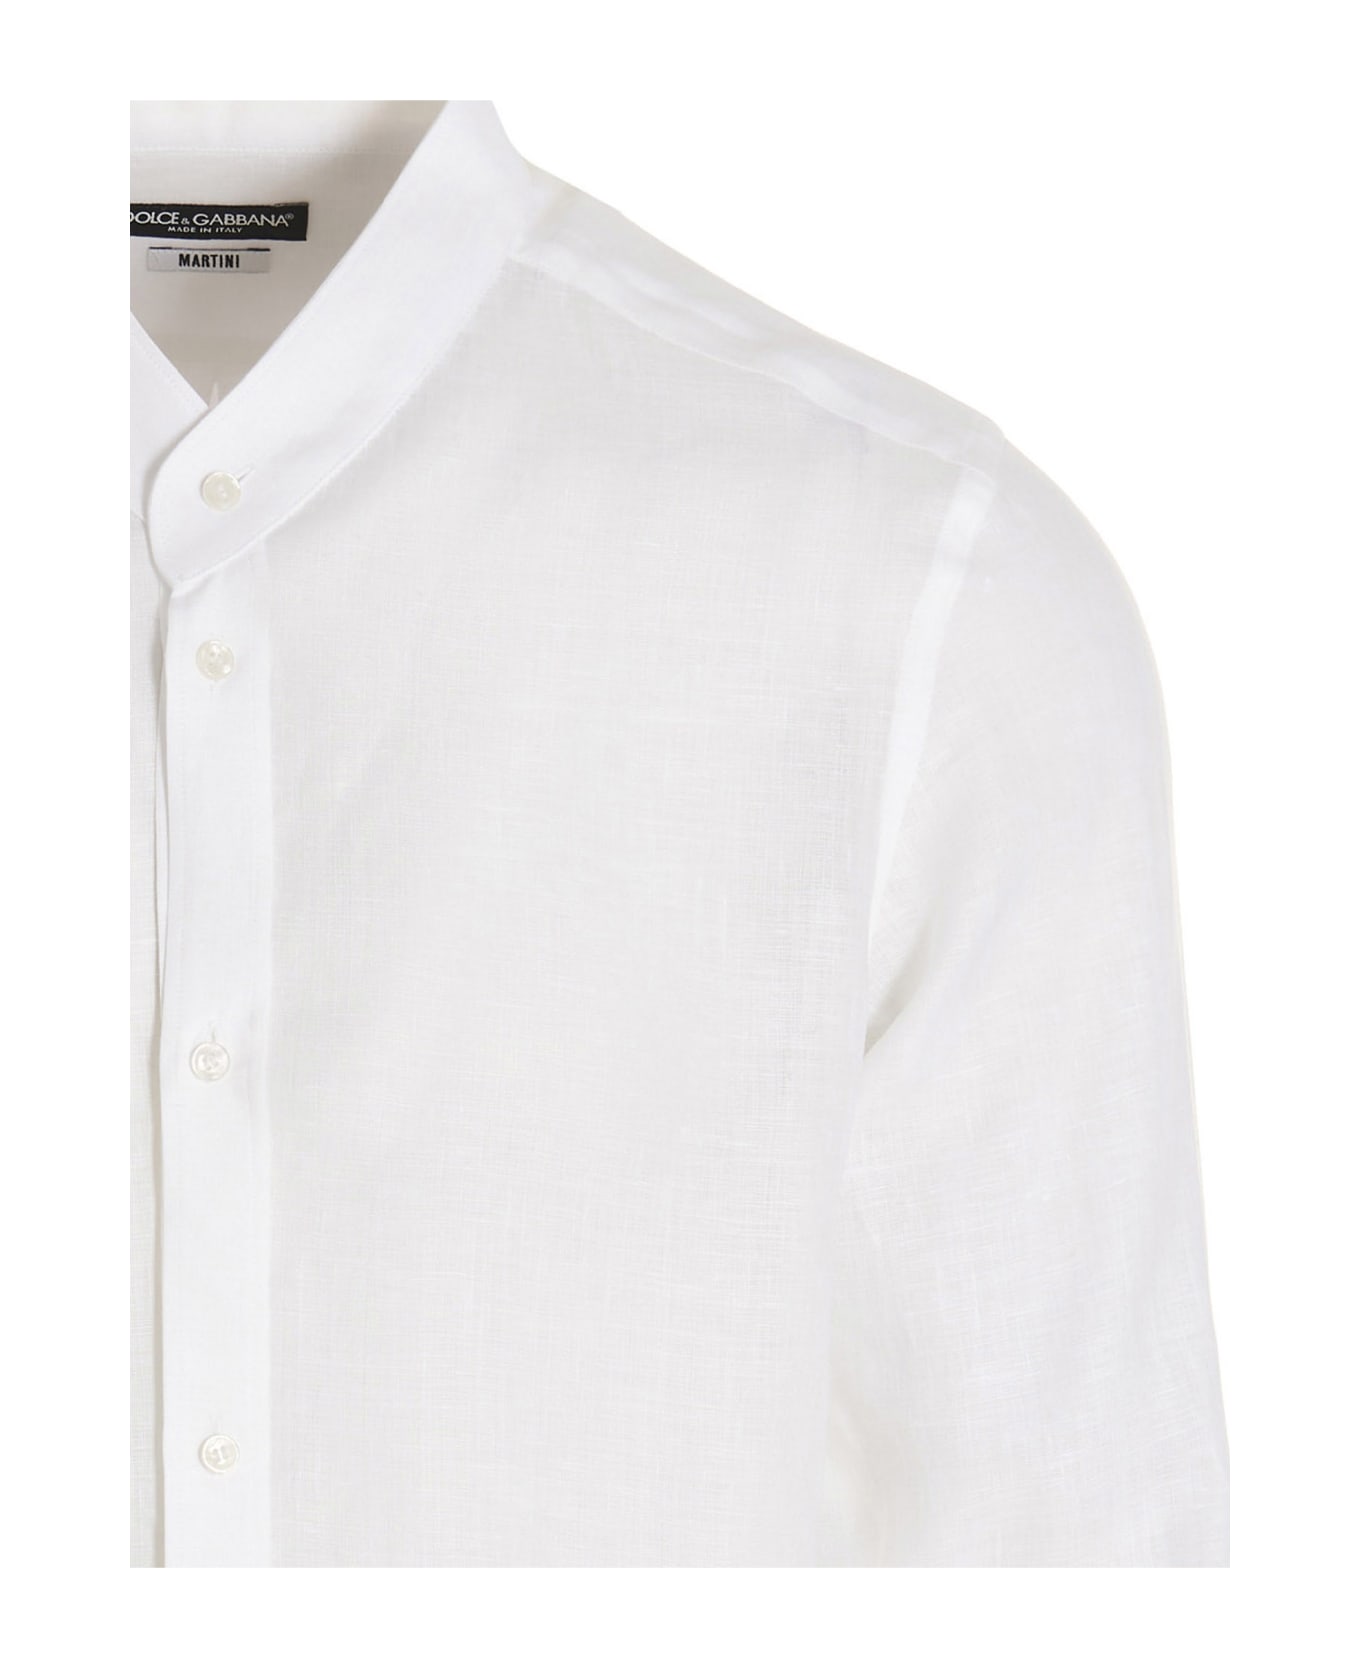 Dolce & Gabbana X Martini Shirt - White